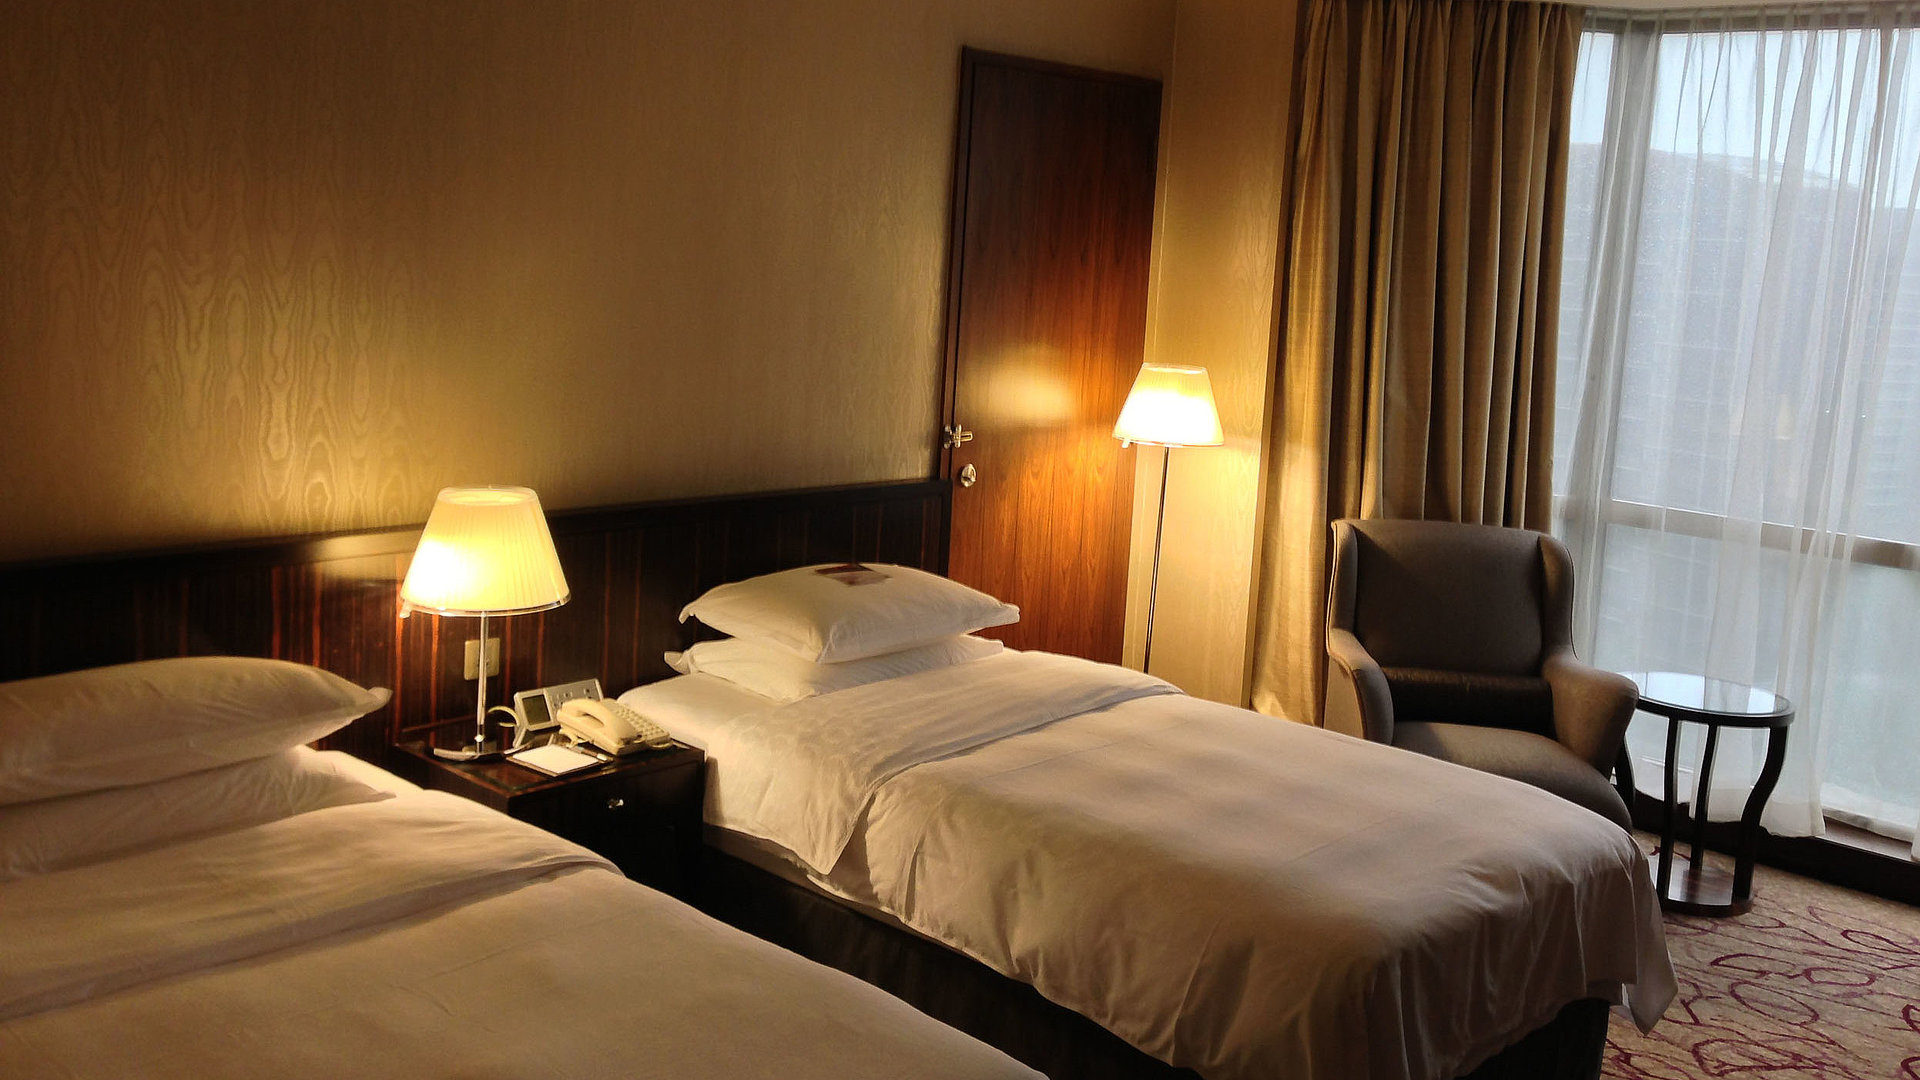 Hotels für Gruppen in Unterfranken - sehr ordentliches Hotelzimmer mit zwei Betten, warmer Nachtlampe und Gardinen